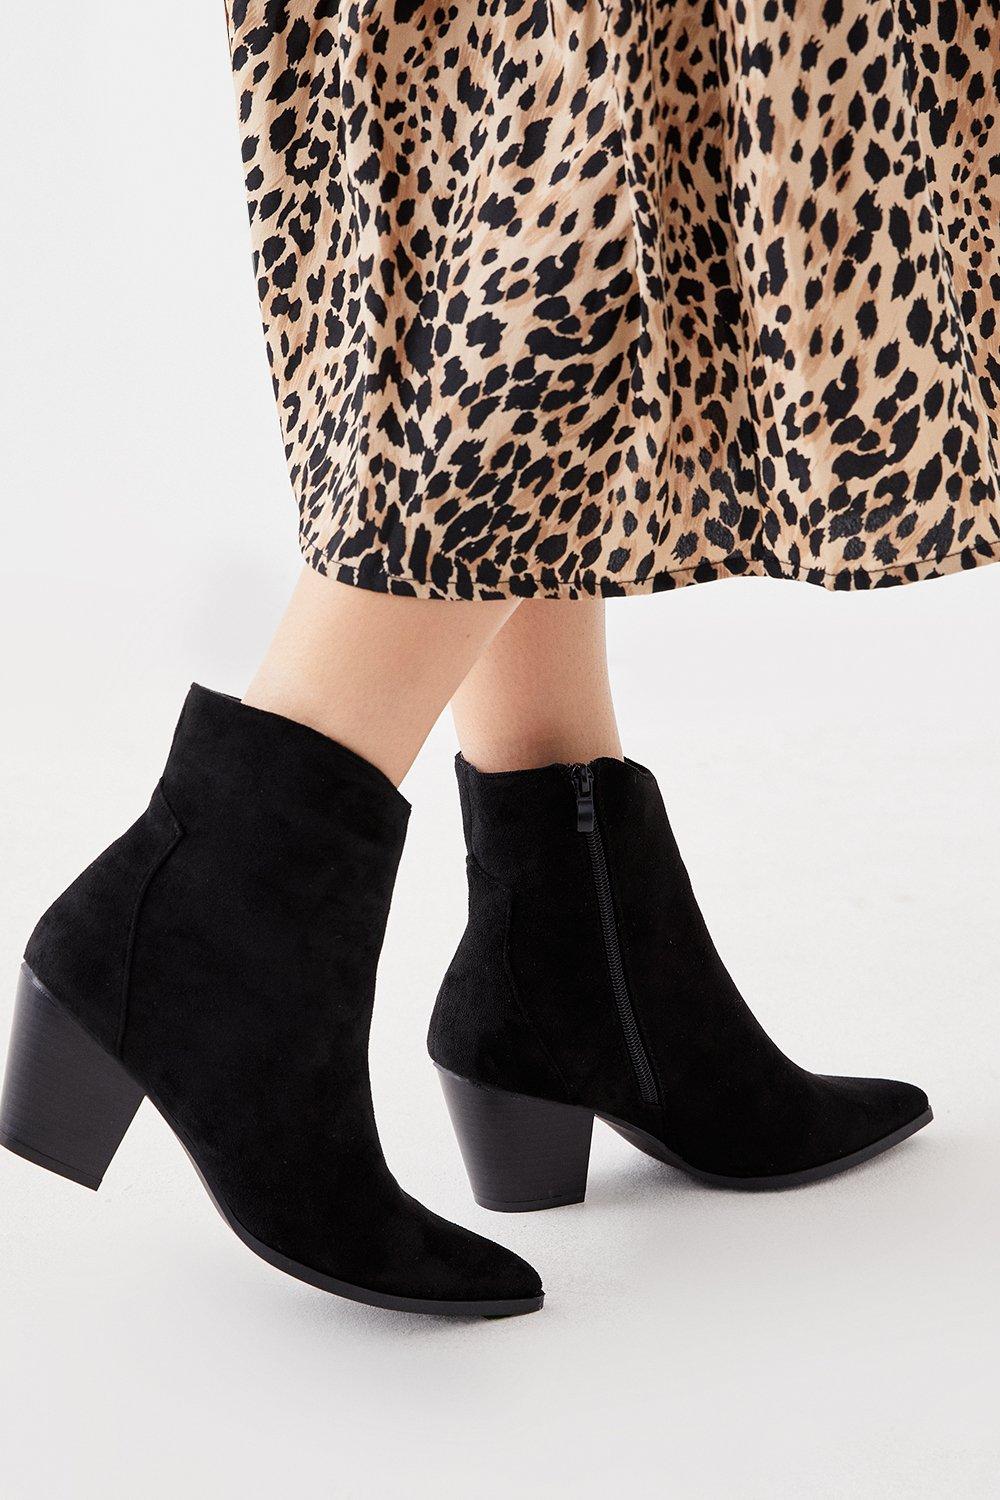 Women’s Aubrey Stacked Heel Western Boots - black - 5